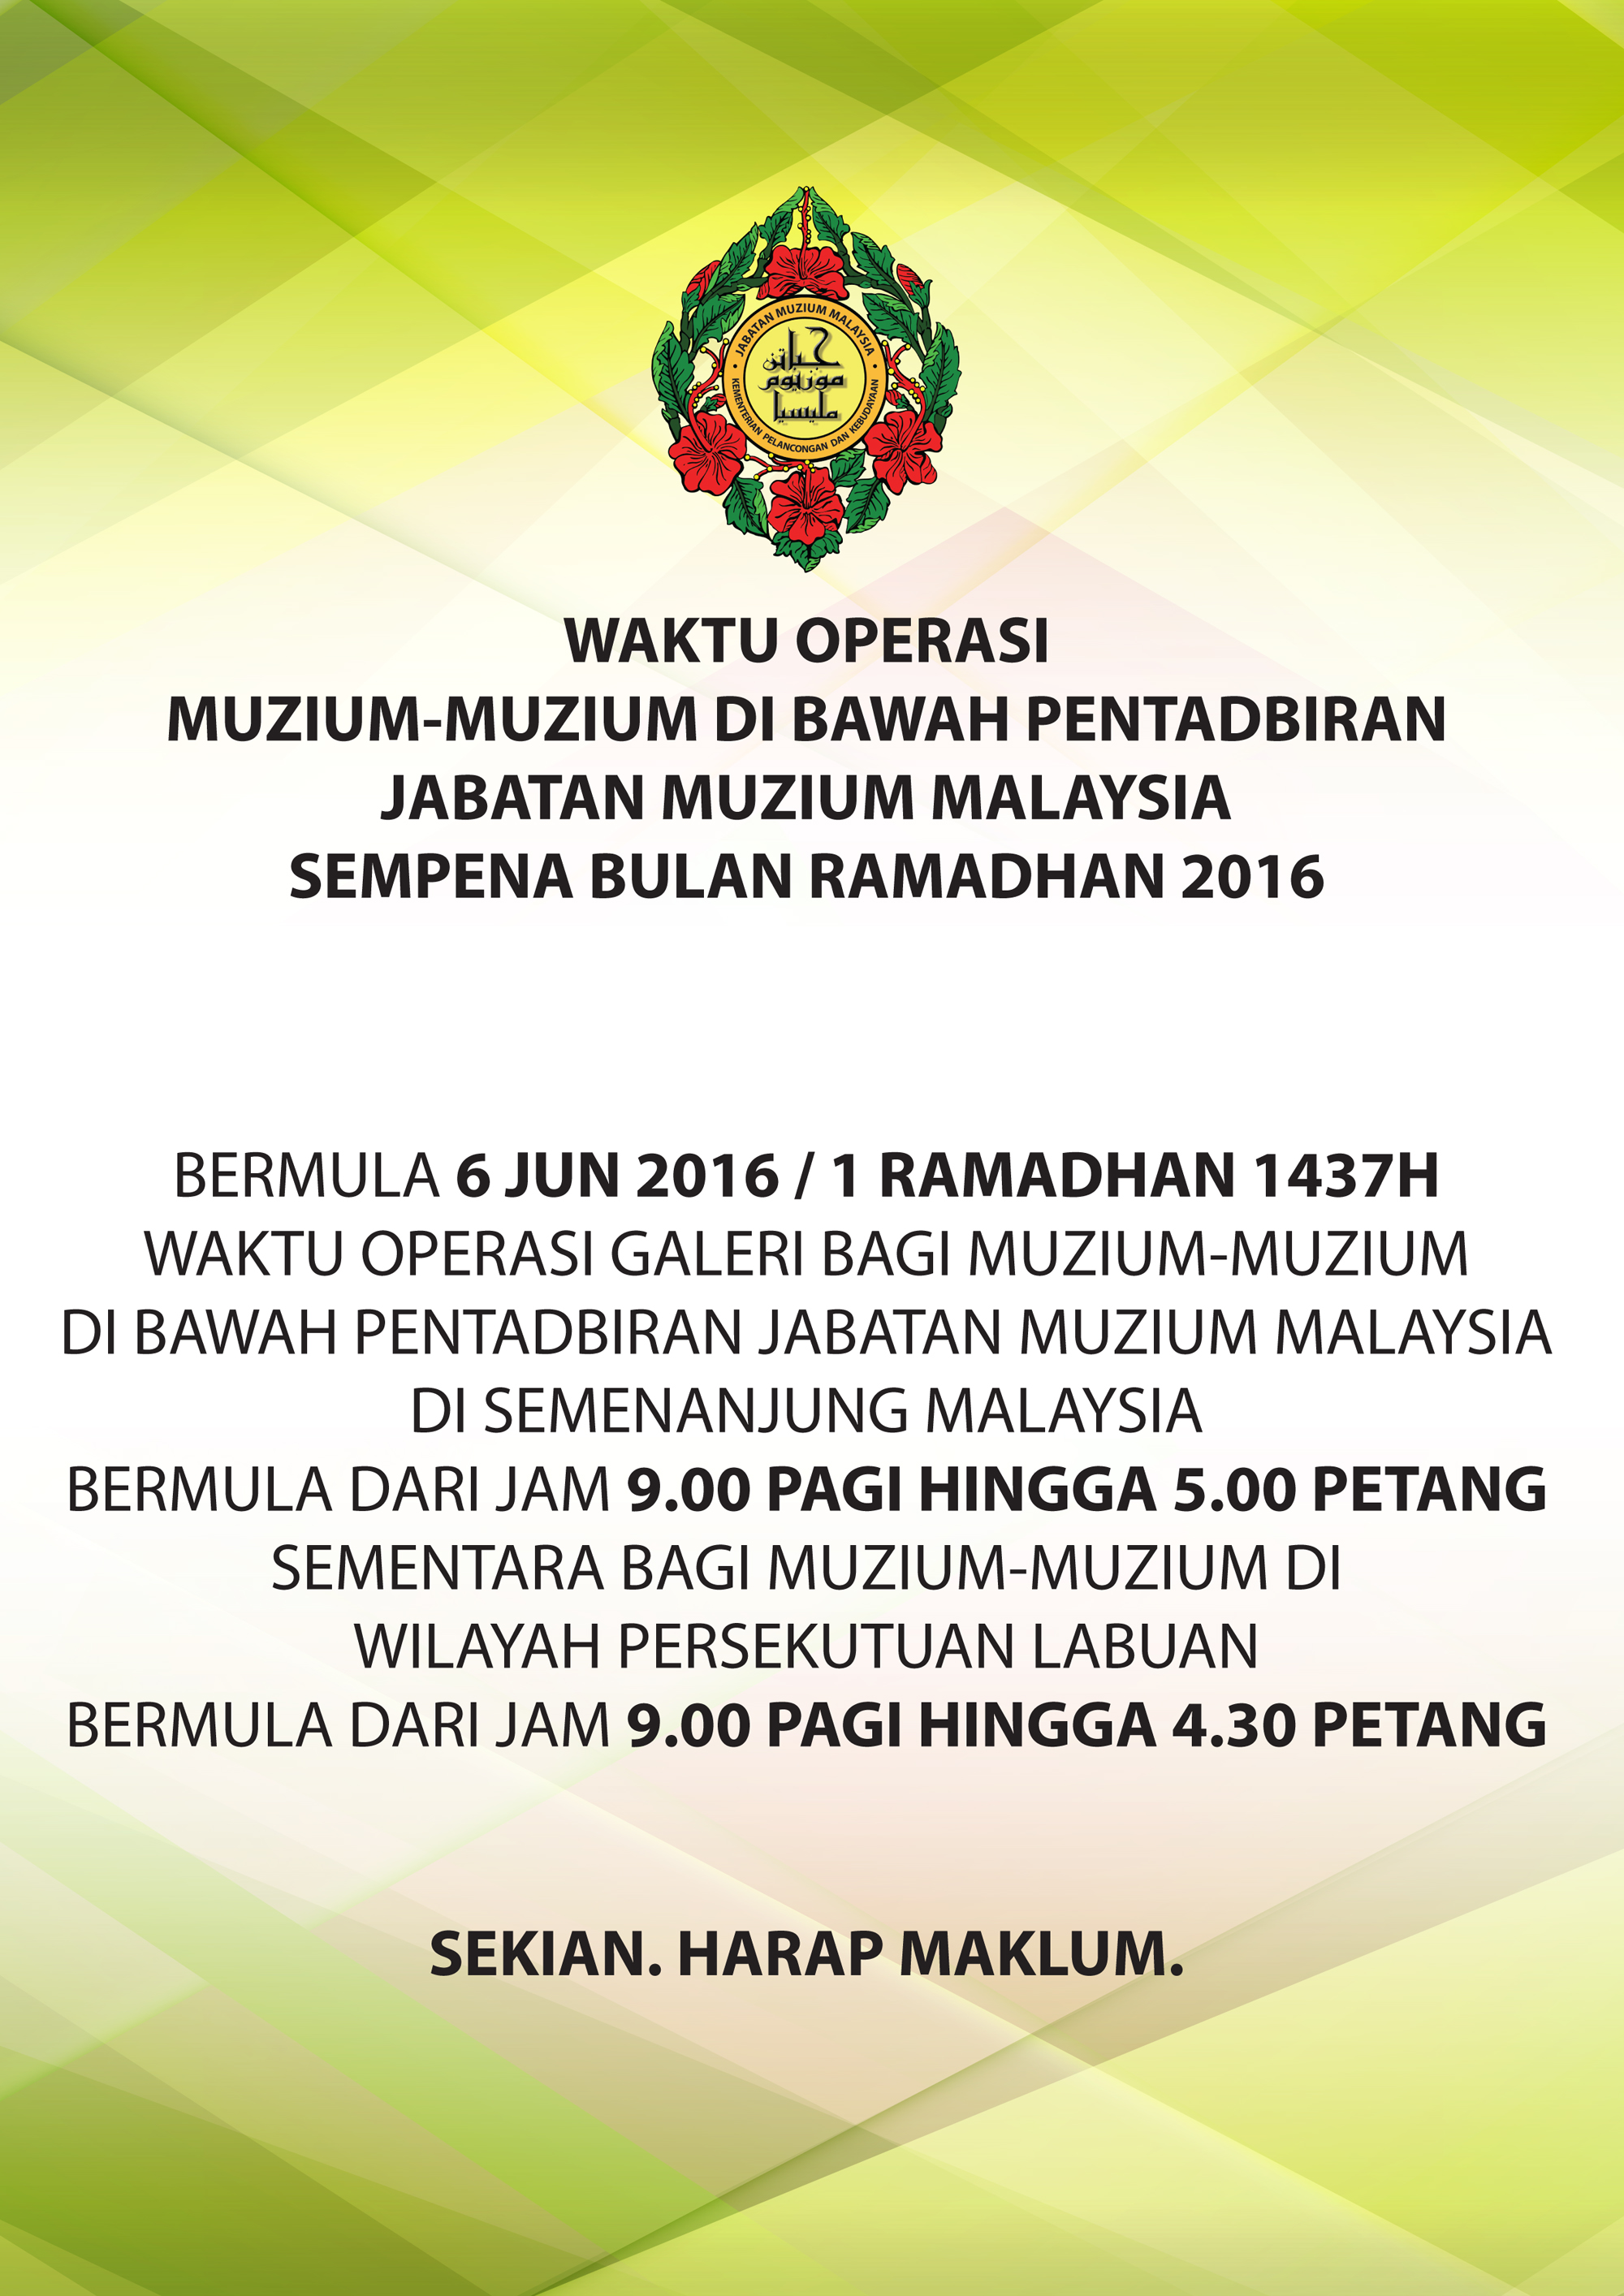 Waktu Operasi Muzium-Muzium Sempena Ramadhan 2016